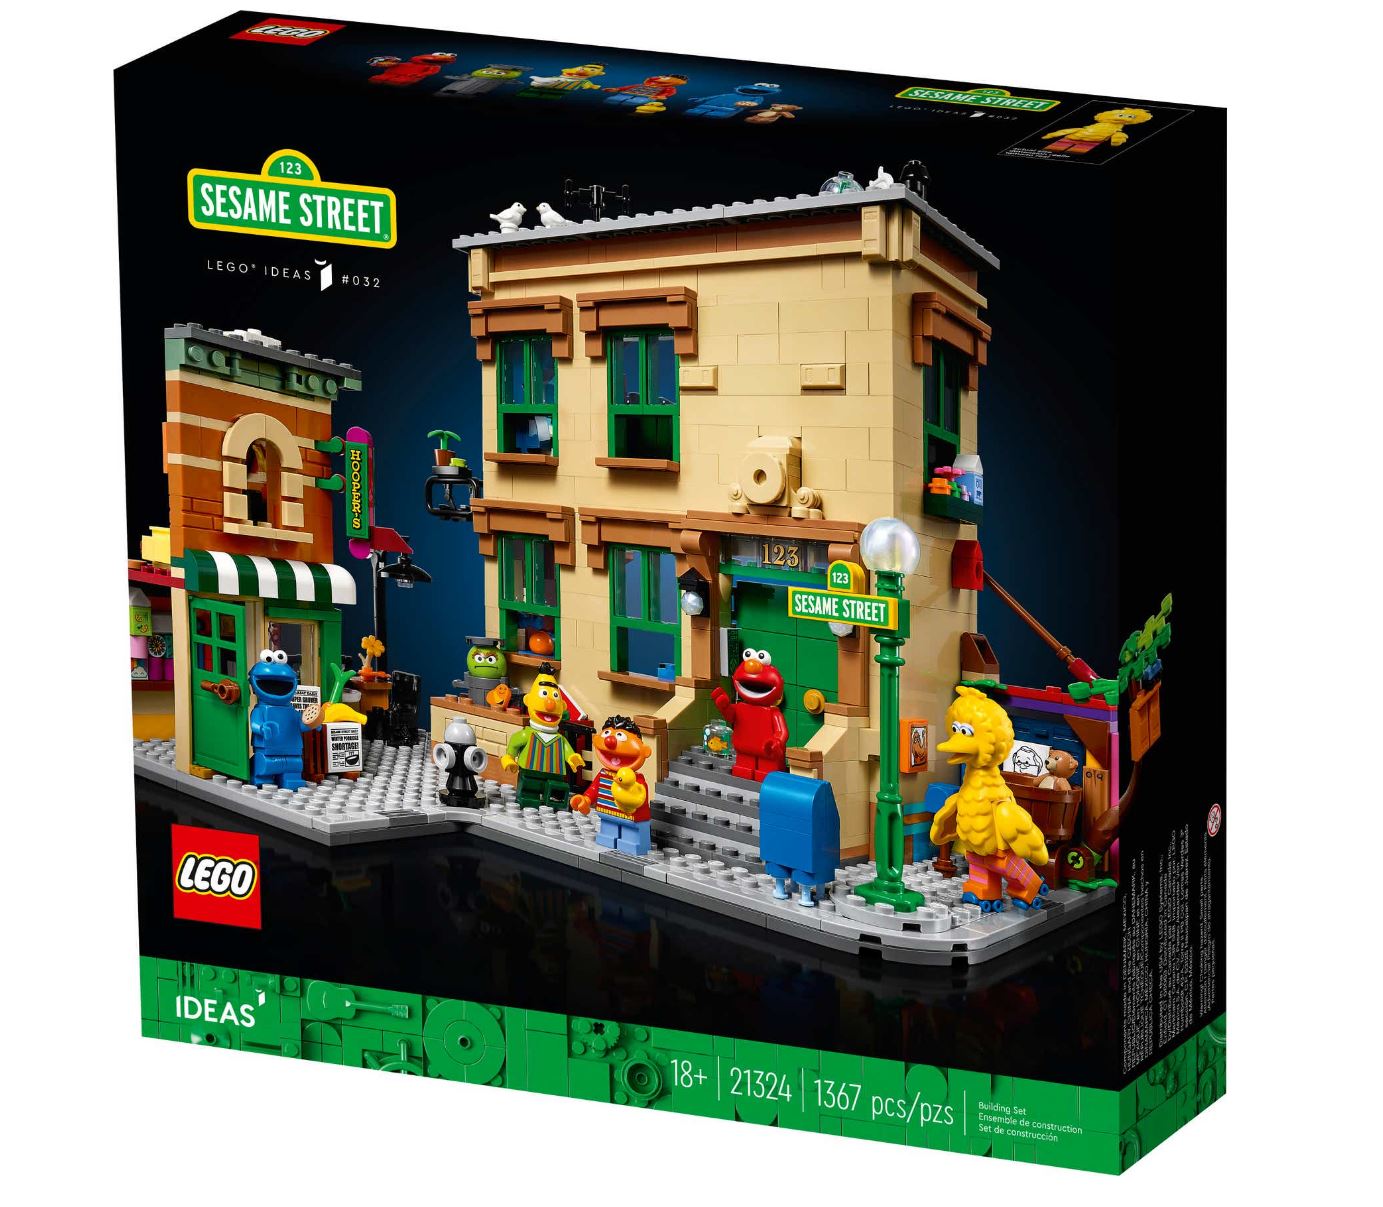 شارع سمسم أو افتح يا سمسم وشخصيات أنيس وبدر المرحة في مكعبات LEGO الجديدة